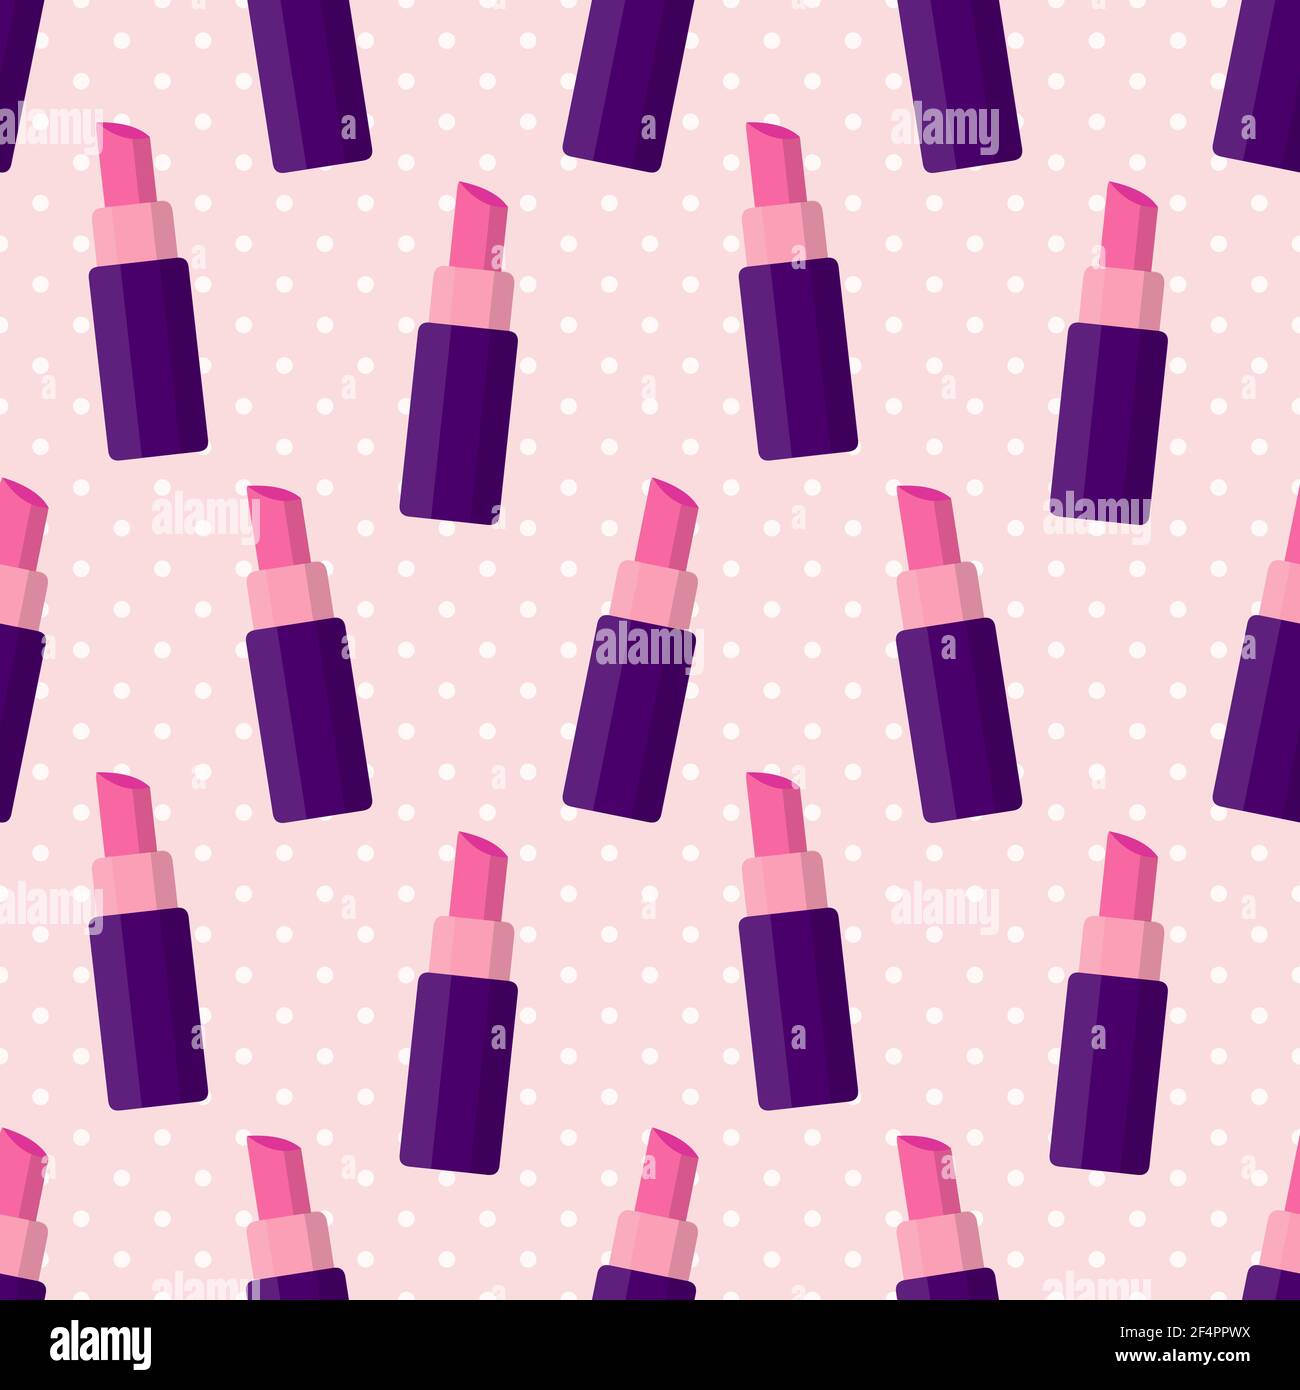 lipstick seamless pattern vector illustration Stock Vector